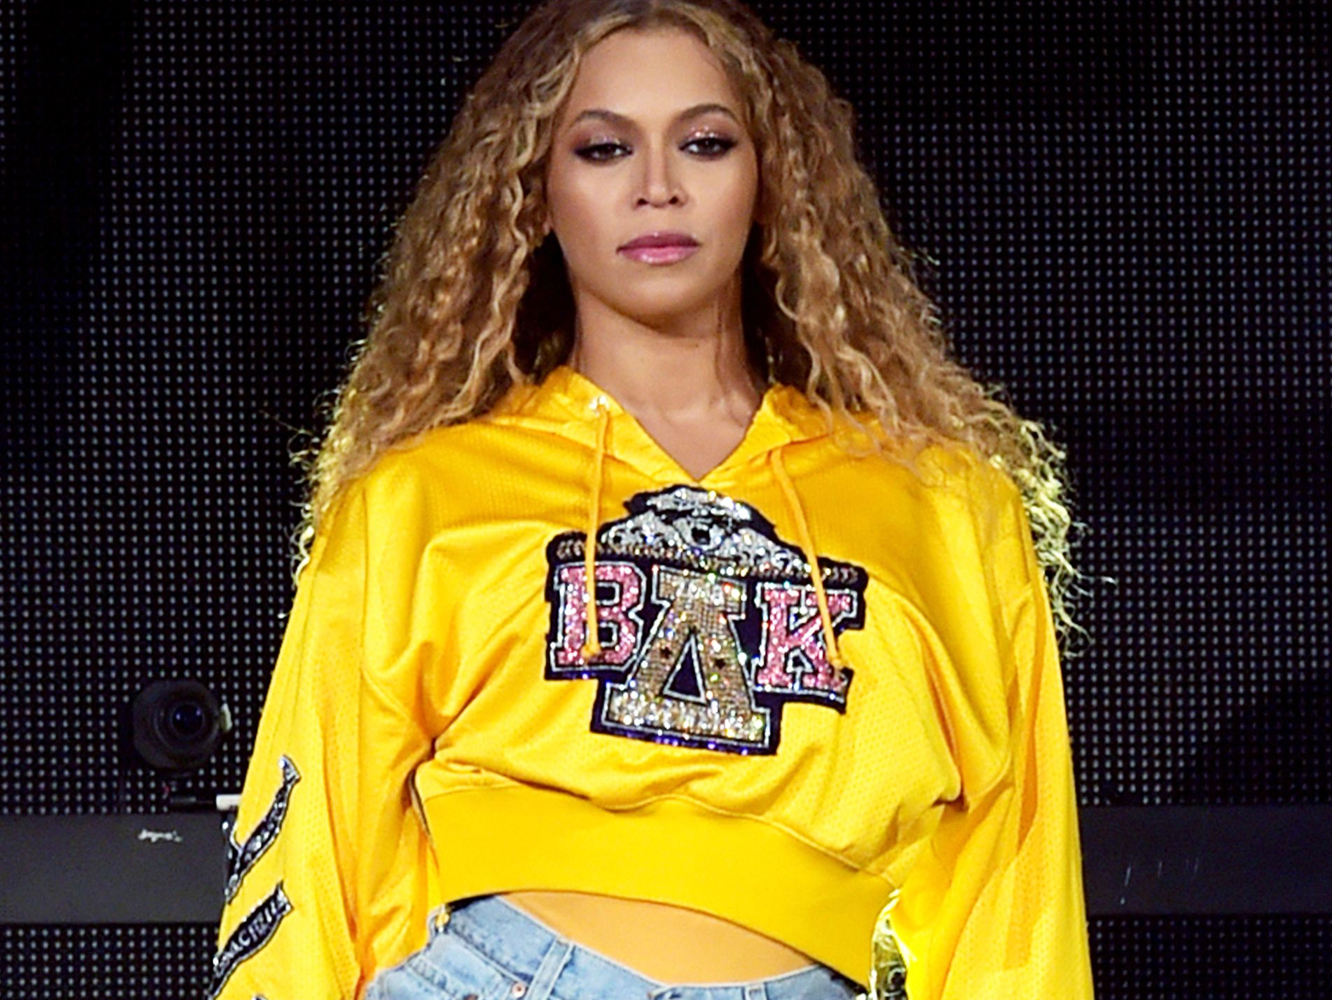  Netflix pone fecha al documental de Beyoncé, que llegará con música nueva